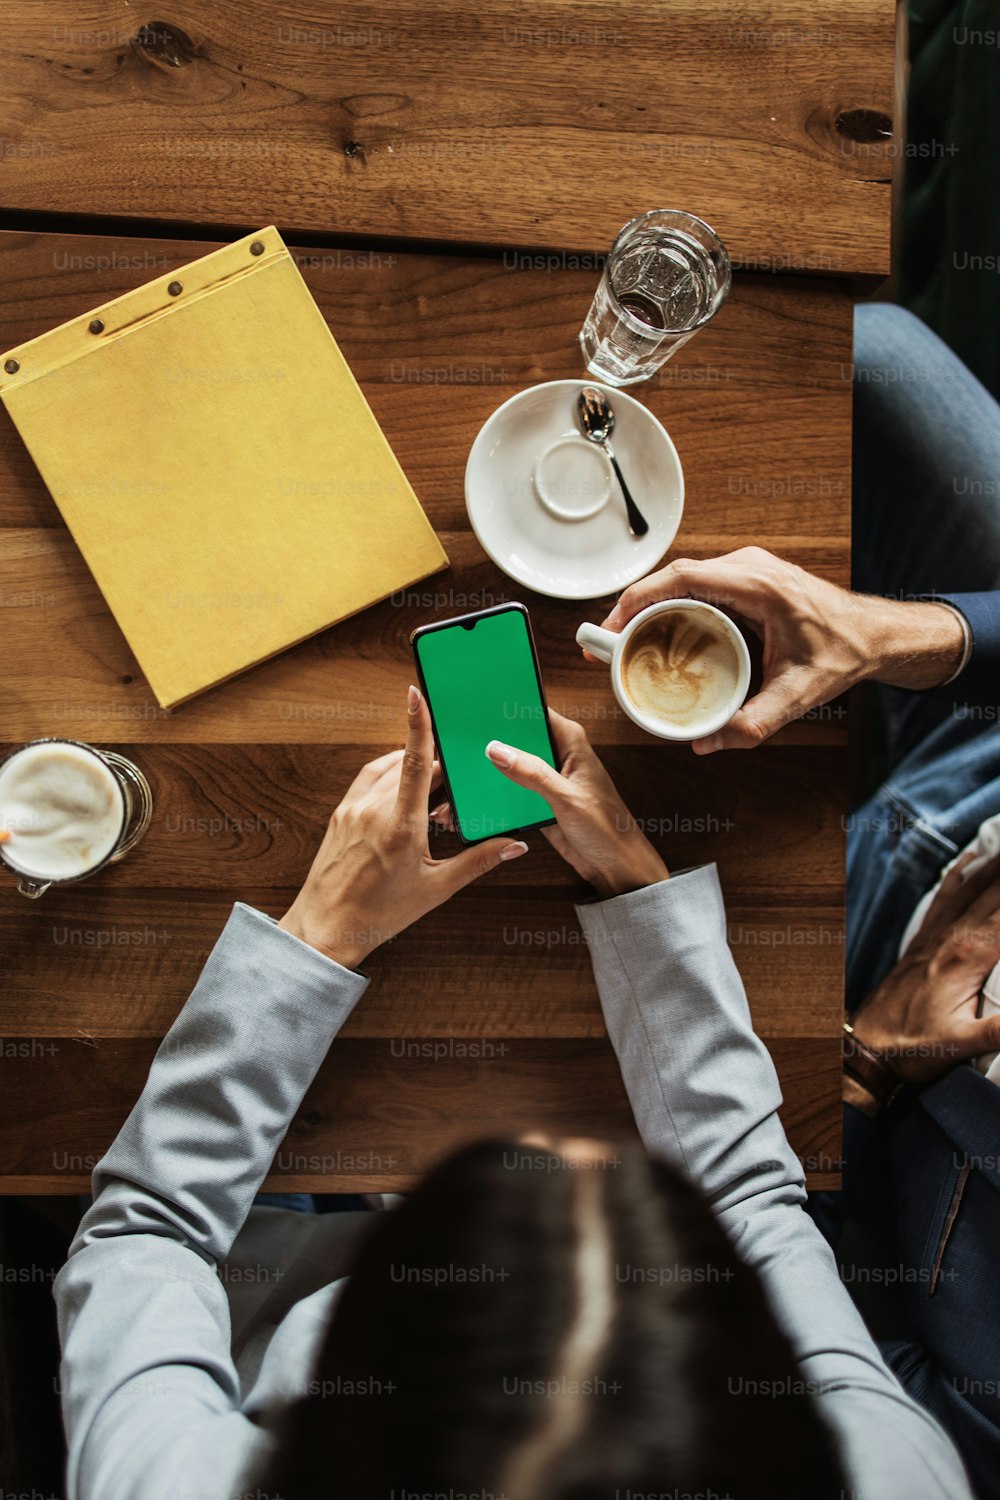 회의나 점심 식사 중 현대적인 카페 레스토랑에서 빈티지 나무 테이블에 빈 녹색 화면이 있는 스마트 휴대폰을 들고 있는 사업가들의 모형 이미지.